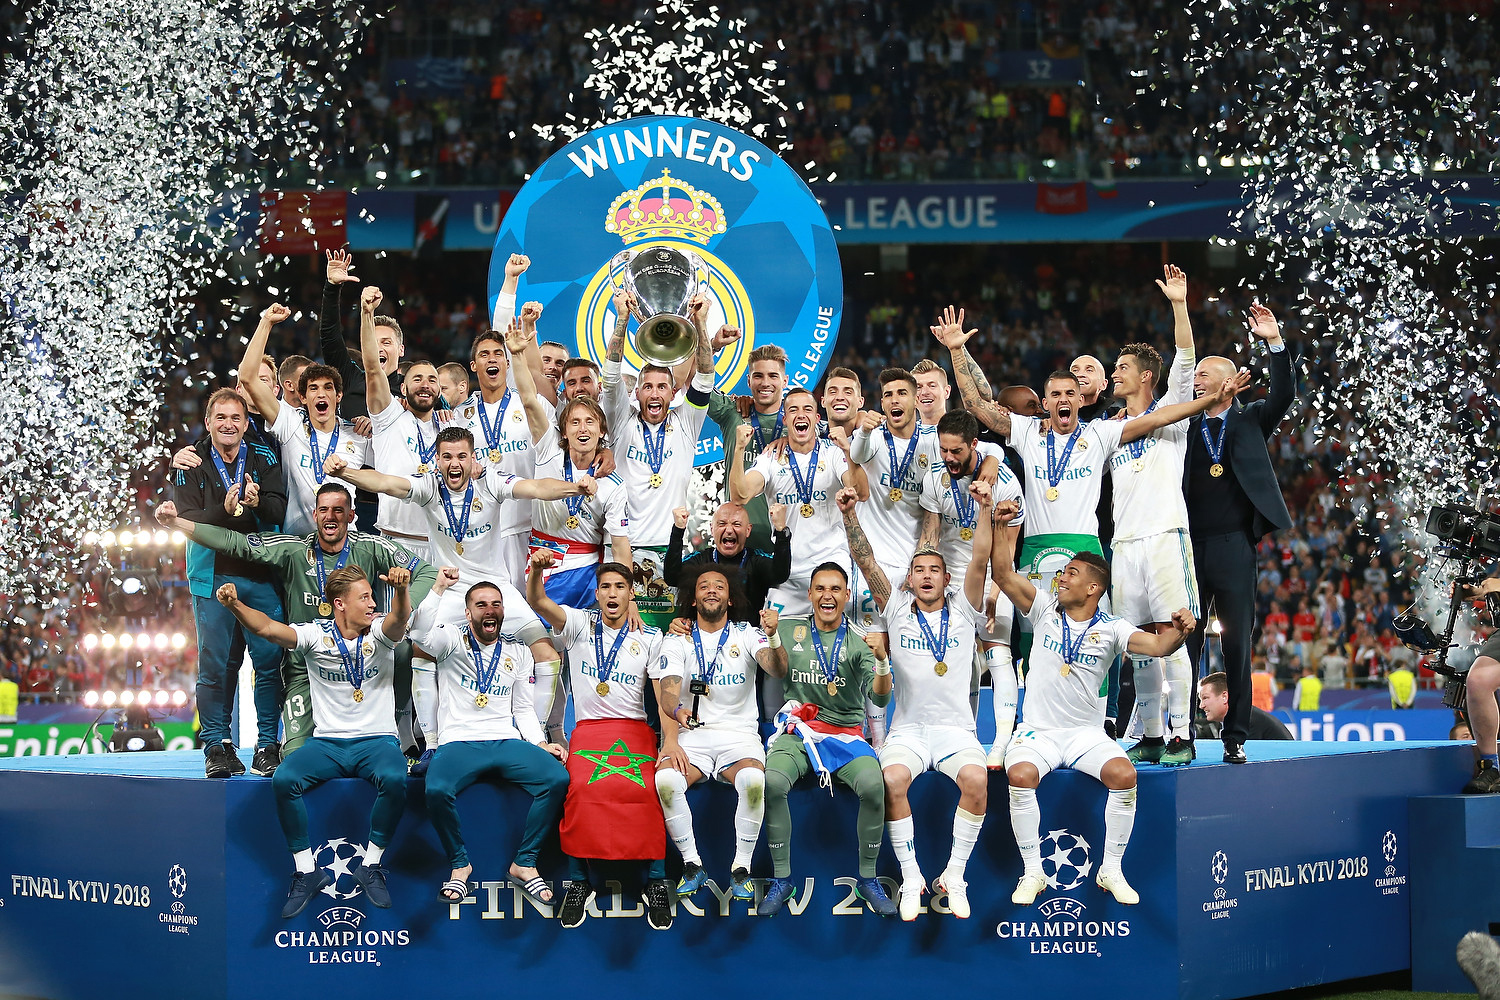 Chức vô địch Champions League danh giá của Real vào năm 2018